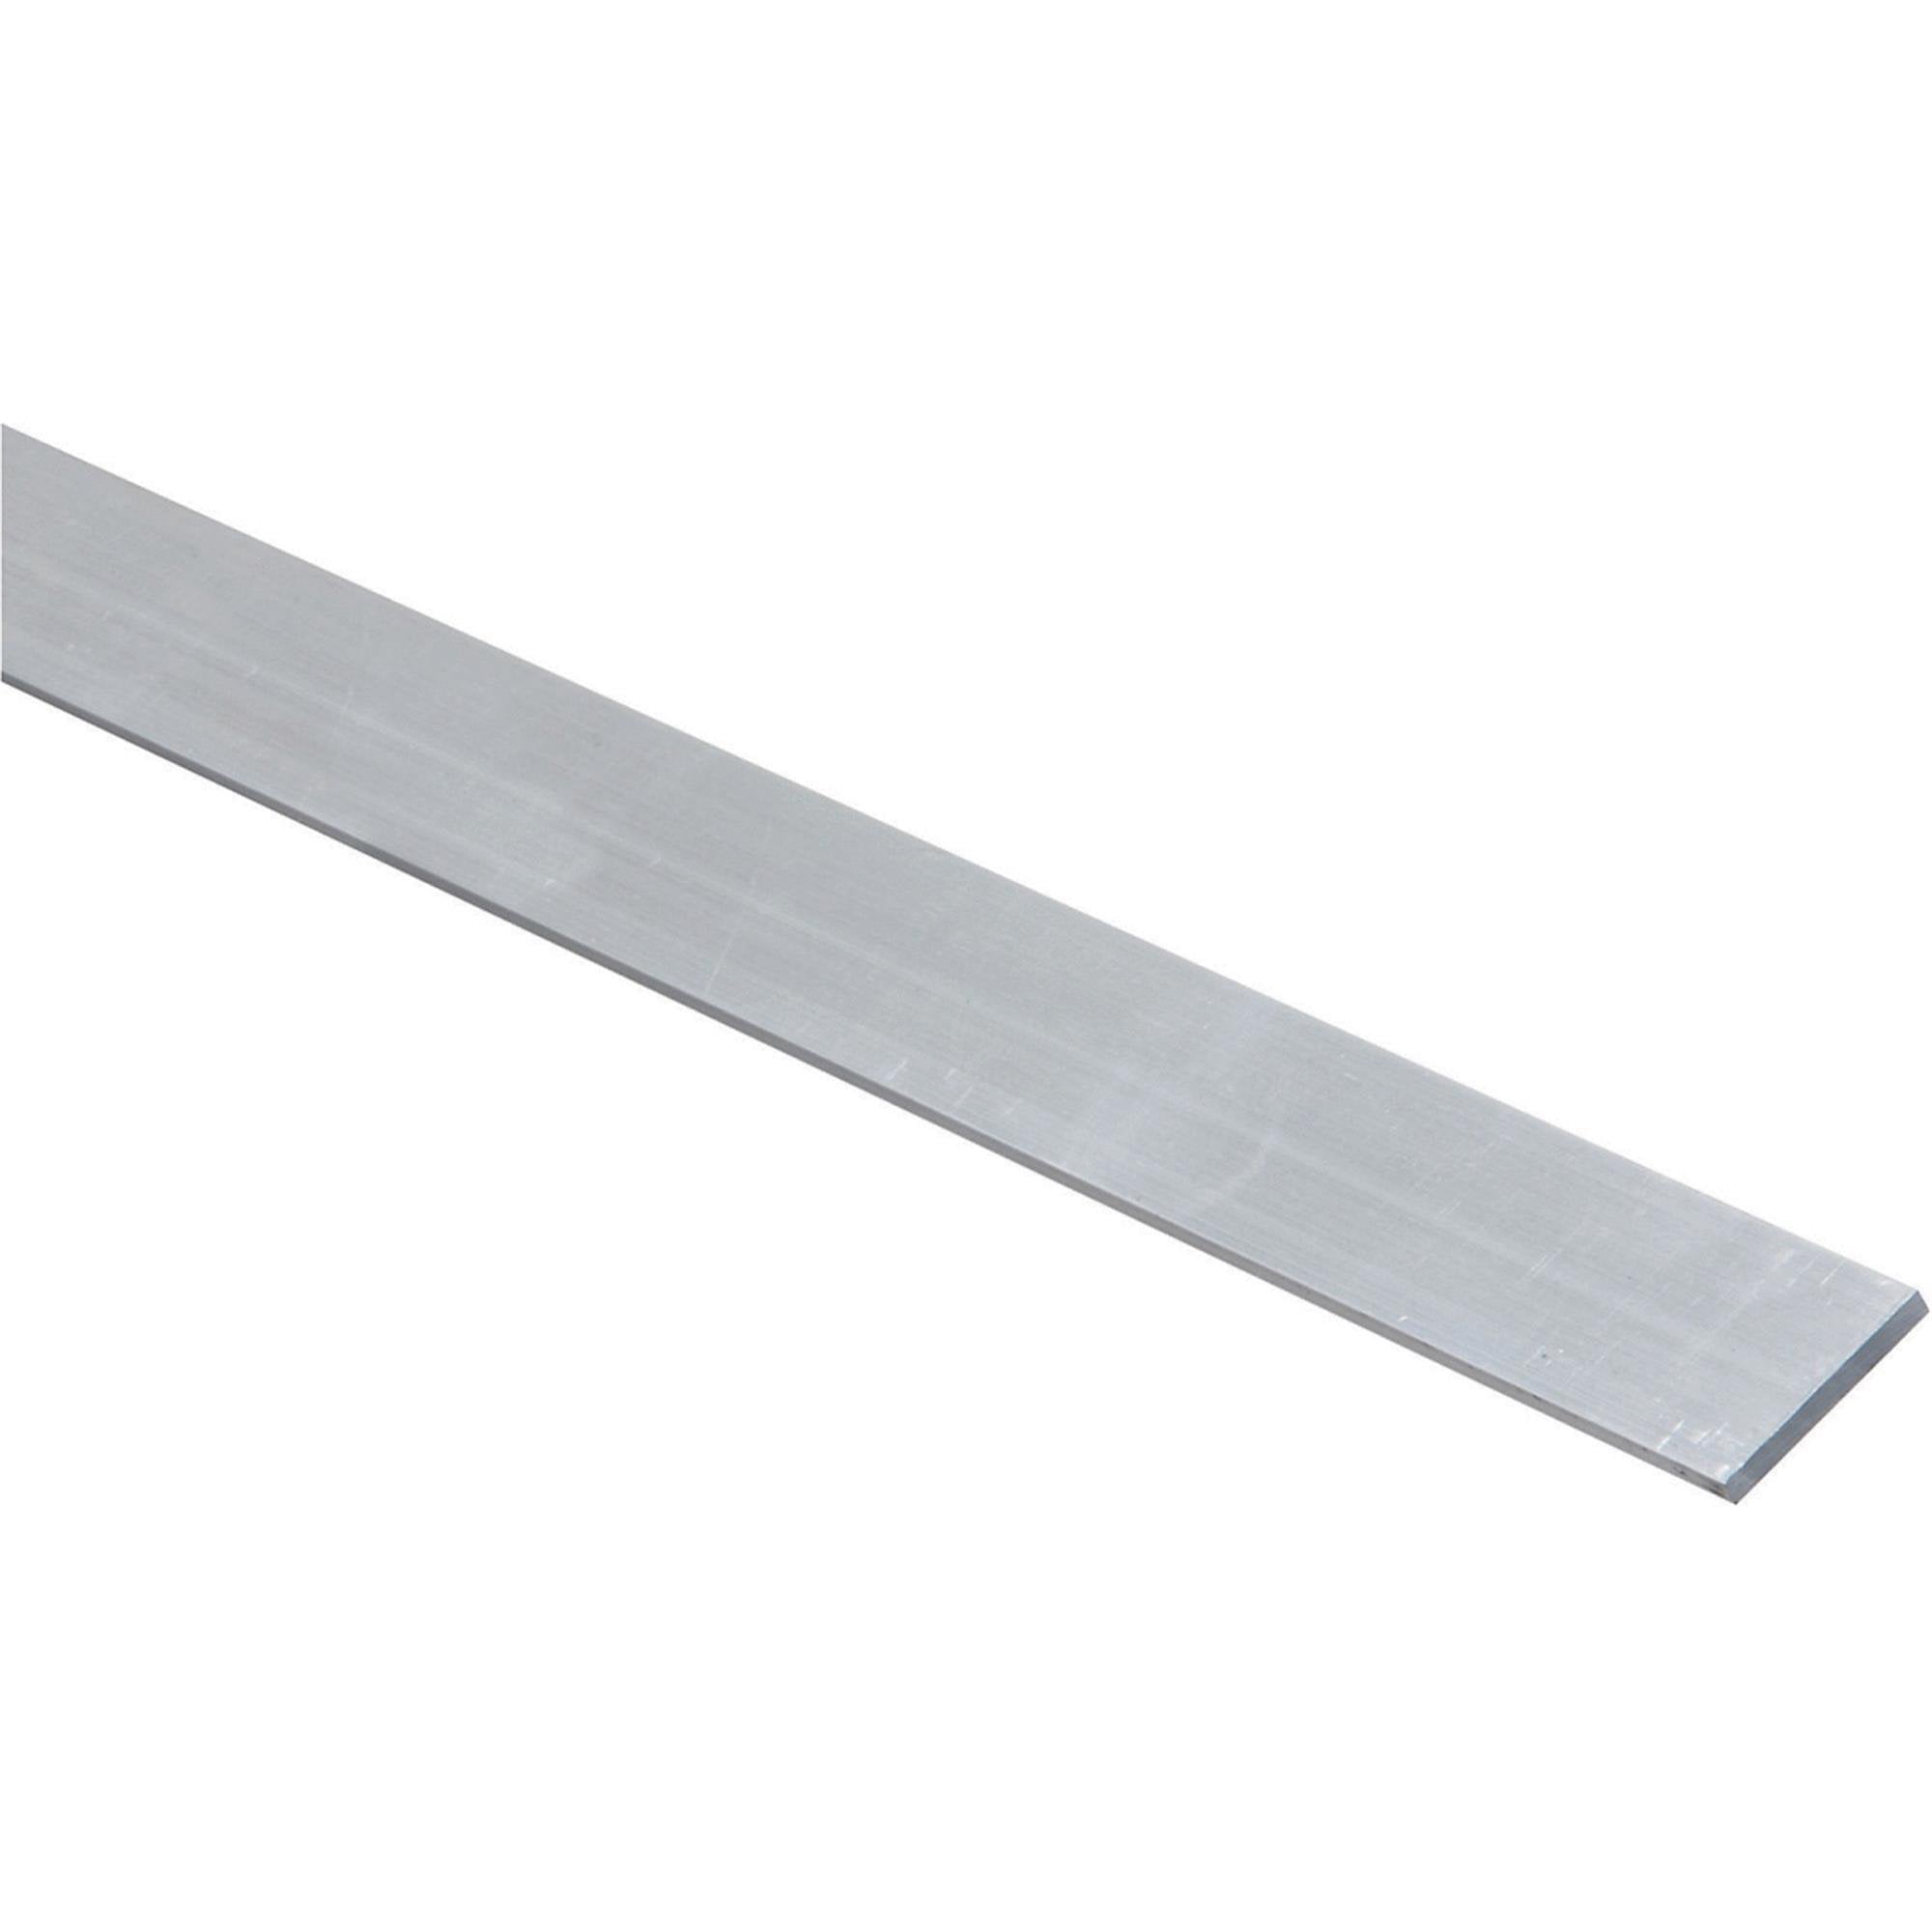 0.5" 1/2" x 3" Aluminum Flat Bar 6061 Plate T6511 Mill Stock 2" Length 